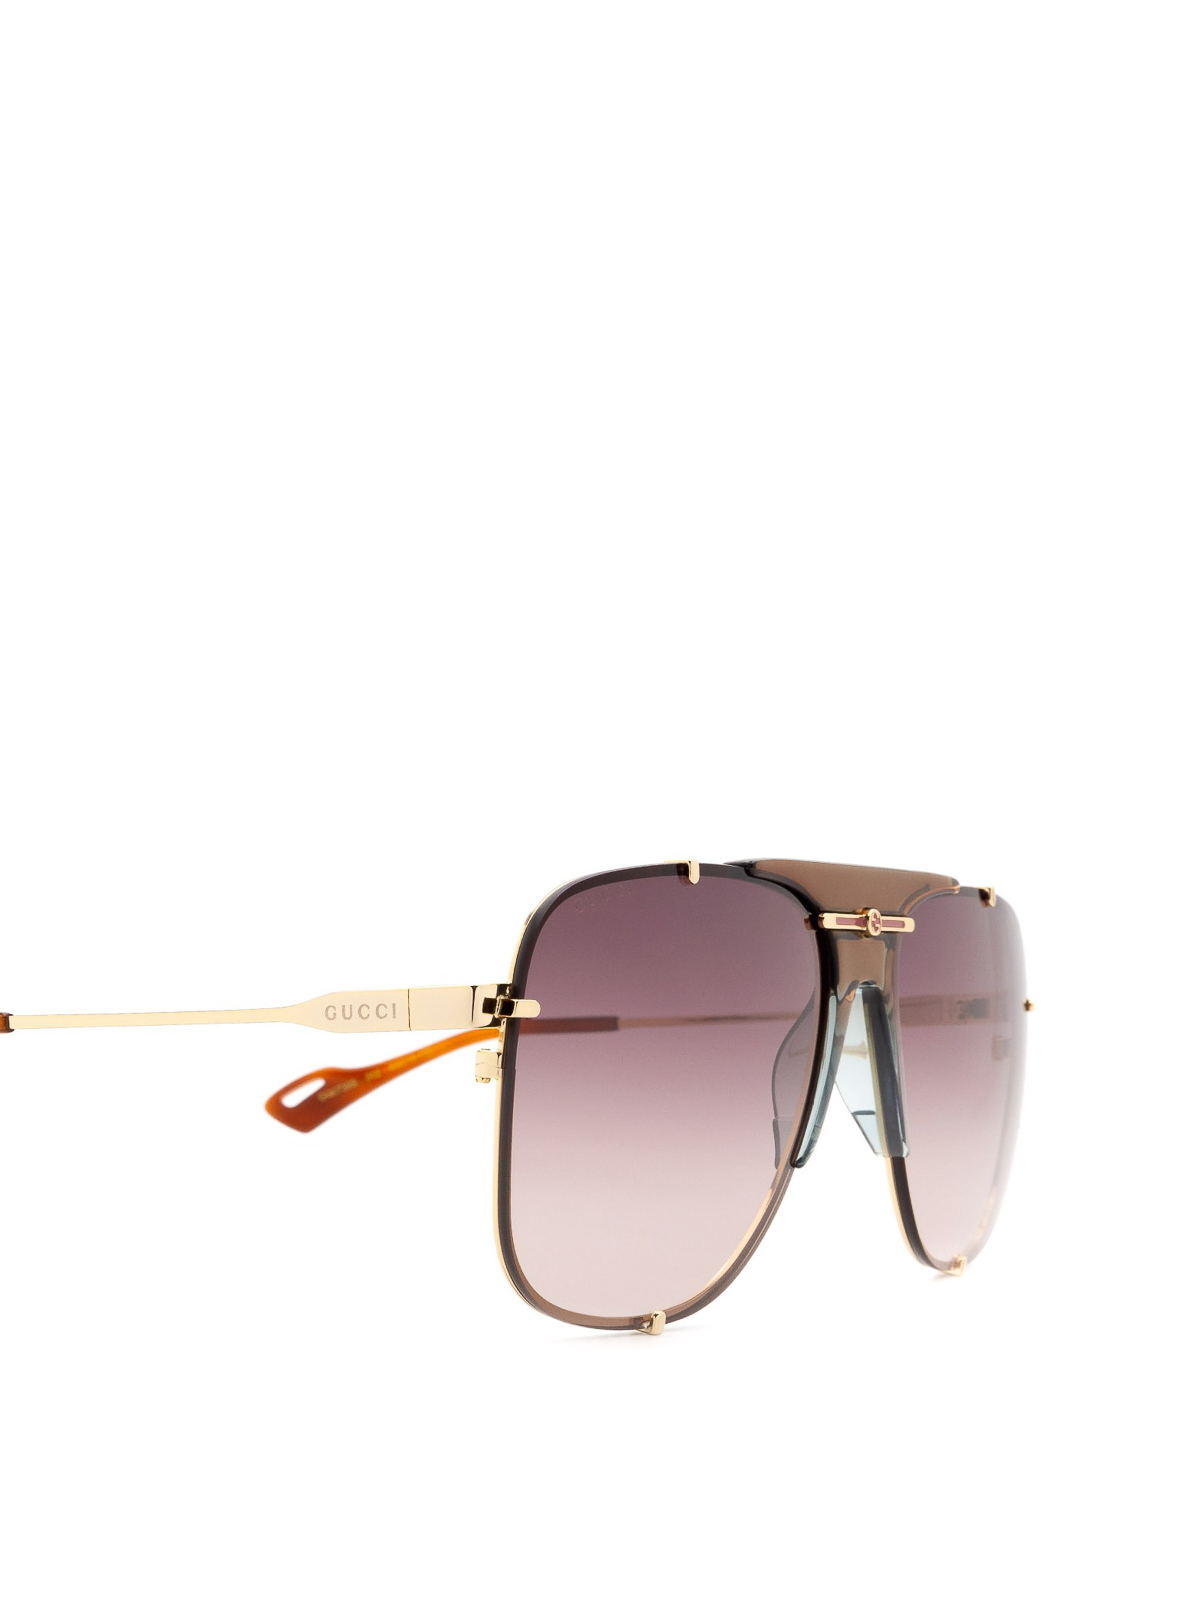 gucci brown aviator sunglasses